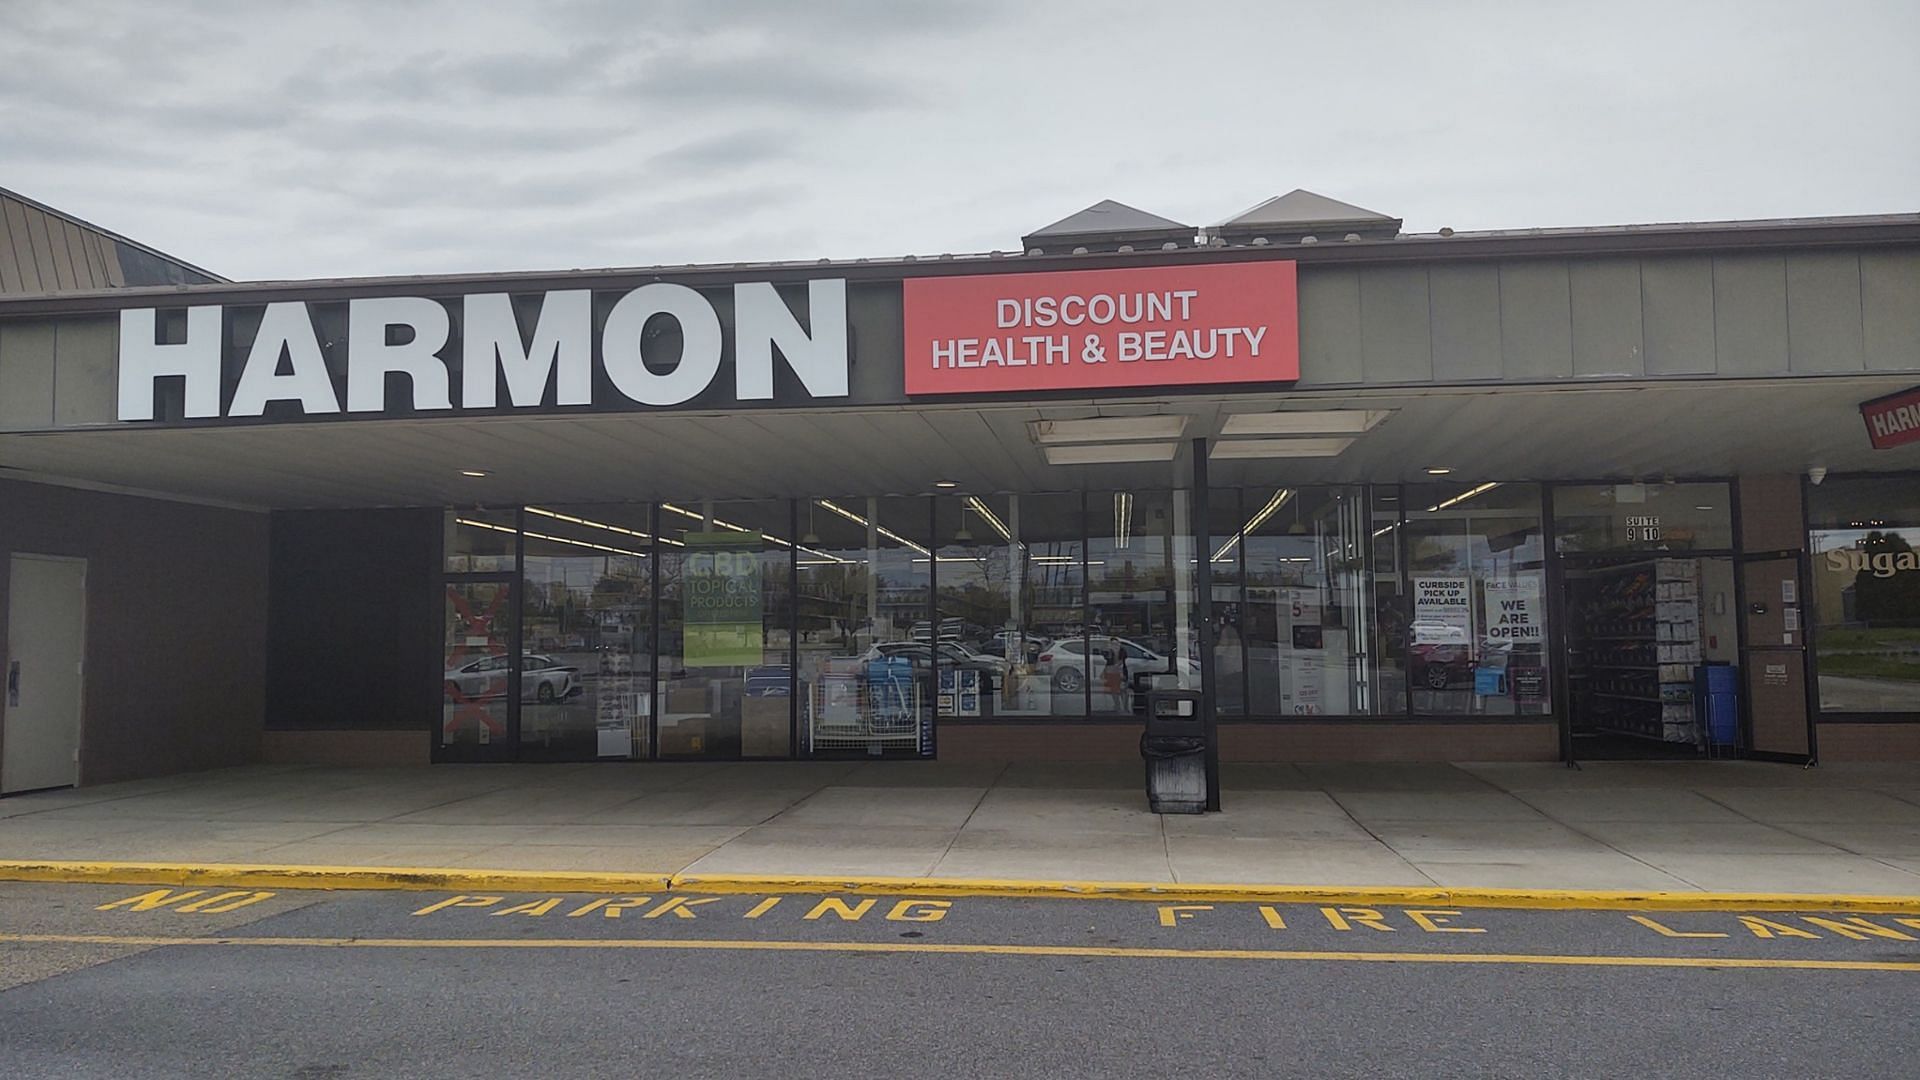   A Harmon store in Poughkeepsie, NY, that will soon be shut down (Image via Harmon Poughkeepsie/Facebook)